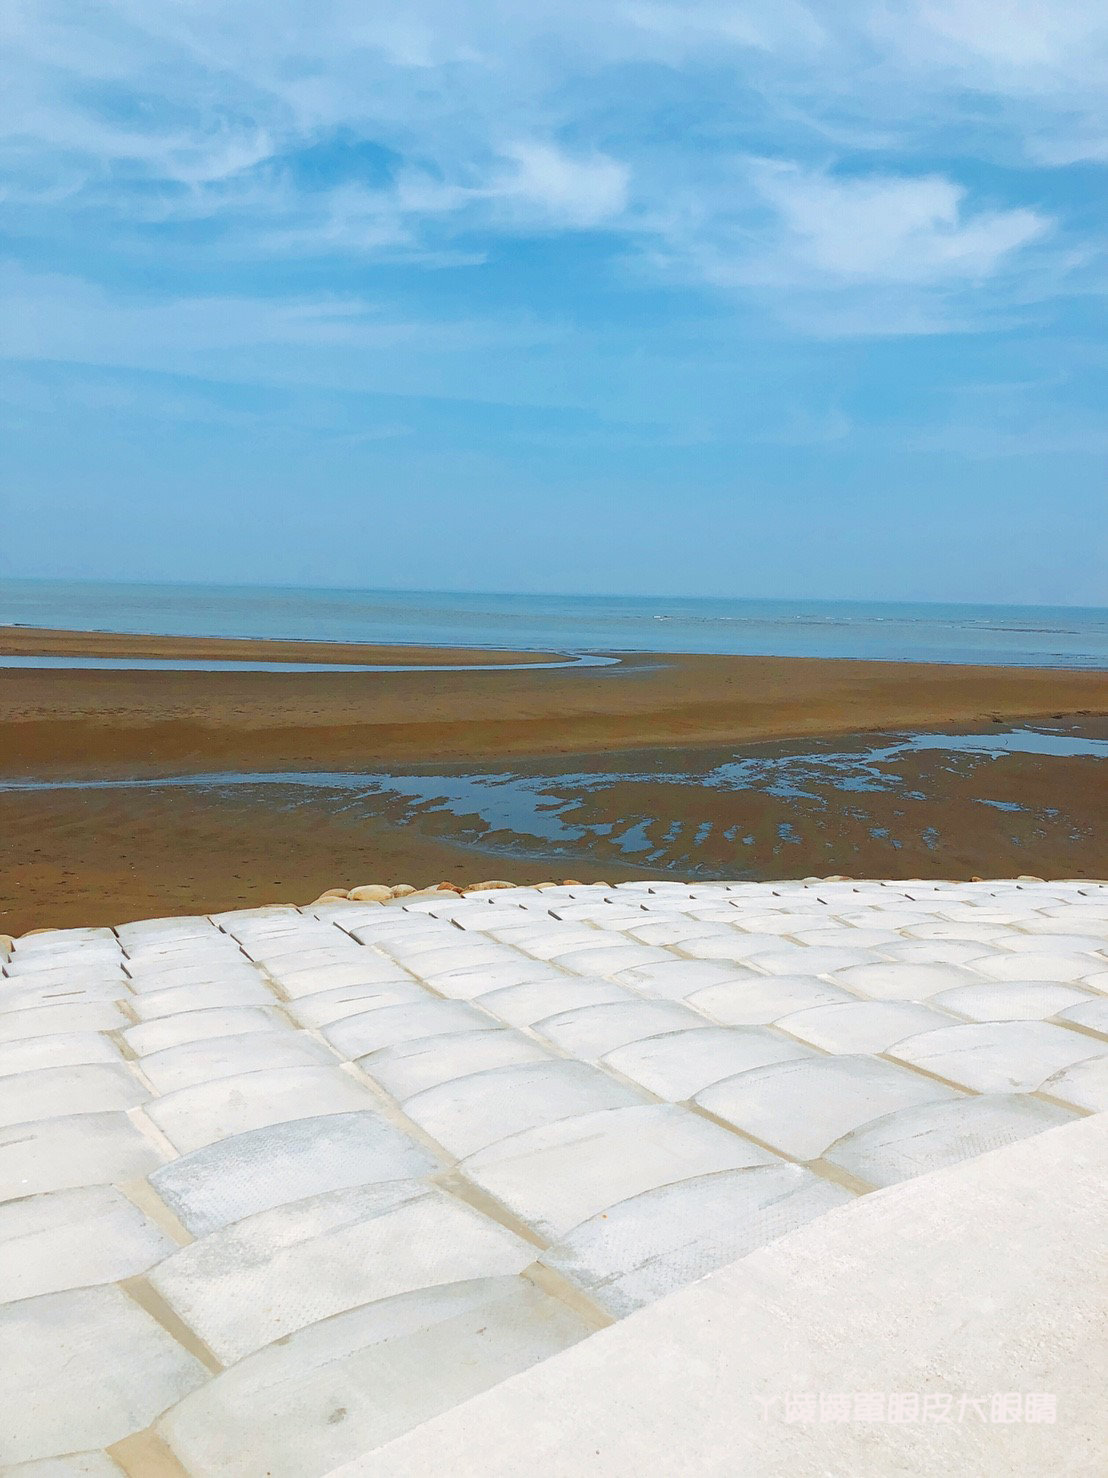 南寮漁港最新打卡景點！巨型大鍵盤坐落新竹，有南寮豆腐岩之稱的魚鱗天梯